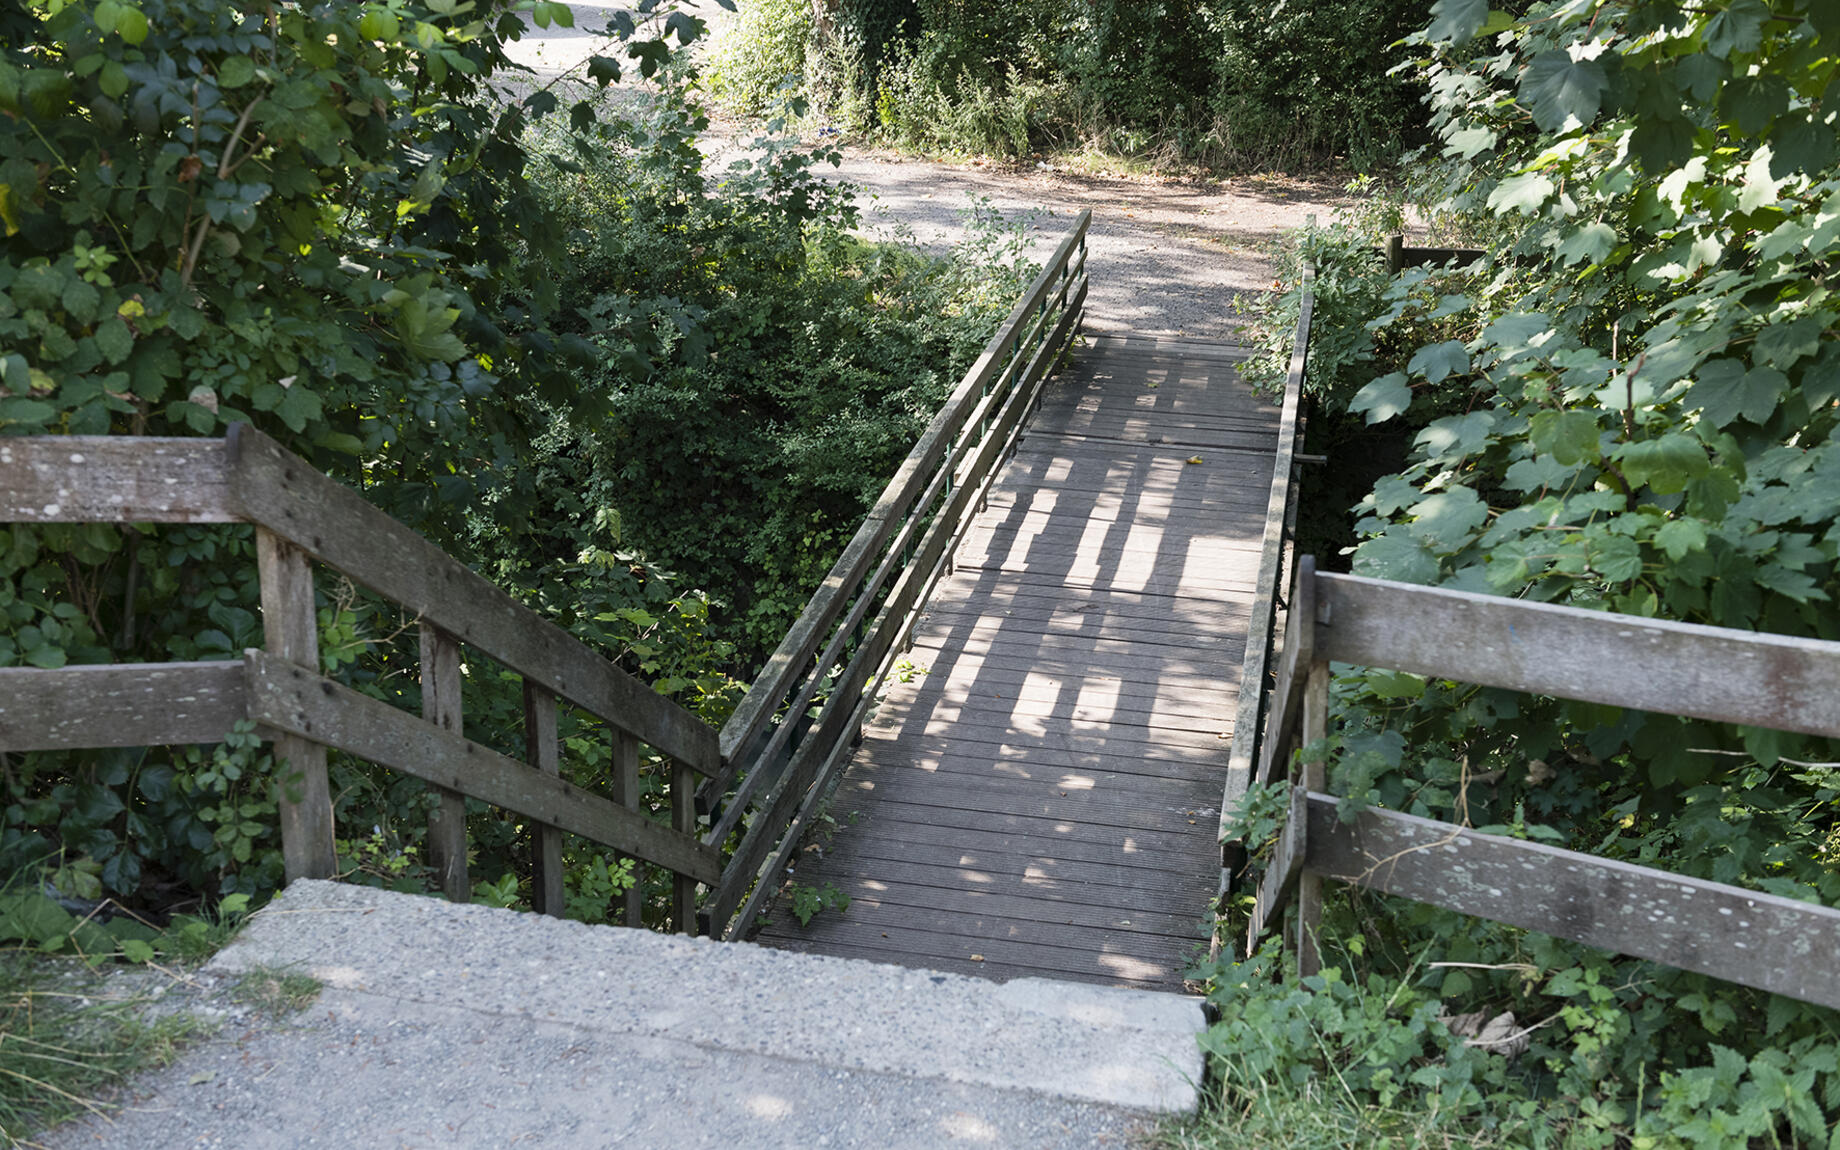 De oude brug over de Leebeek wordt vervangen